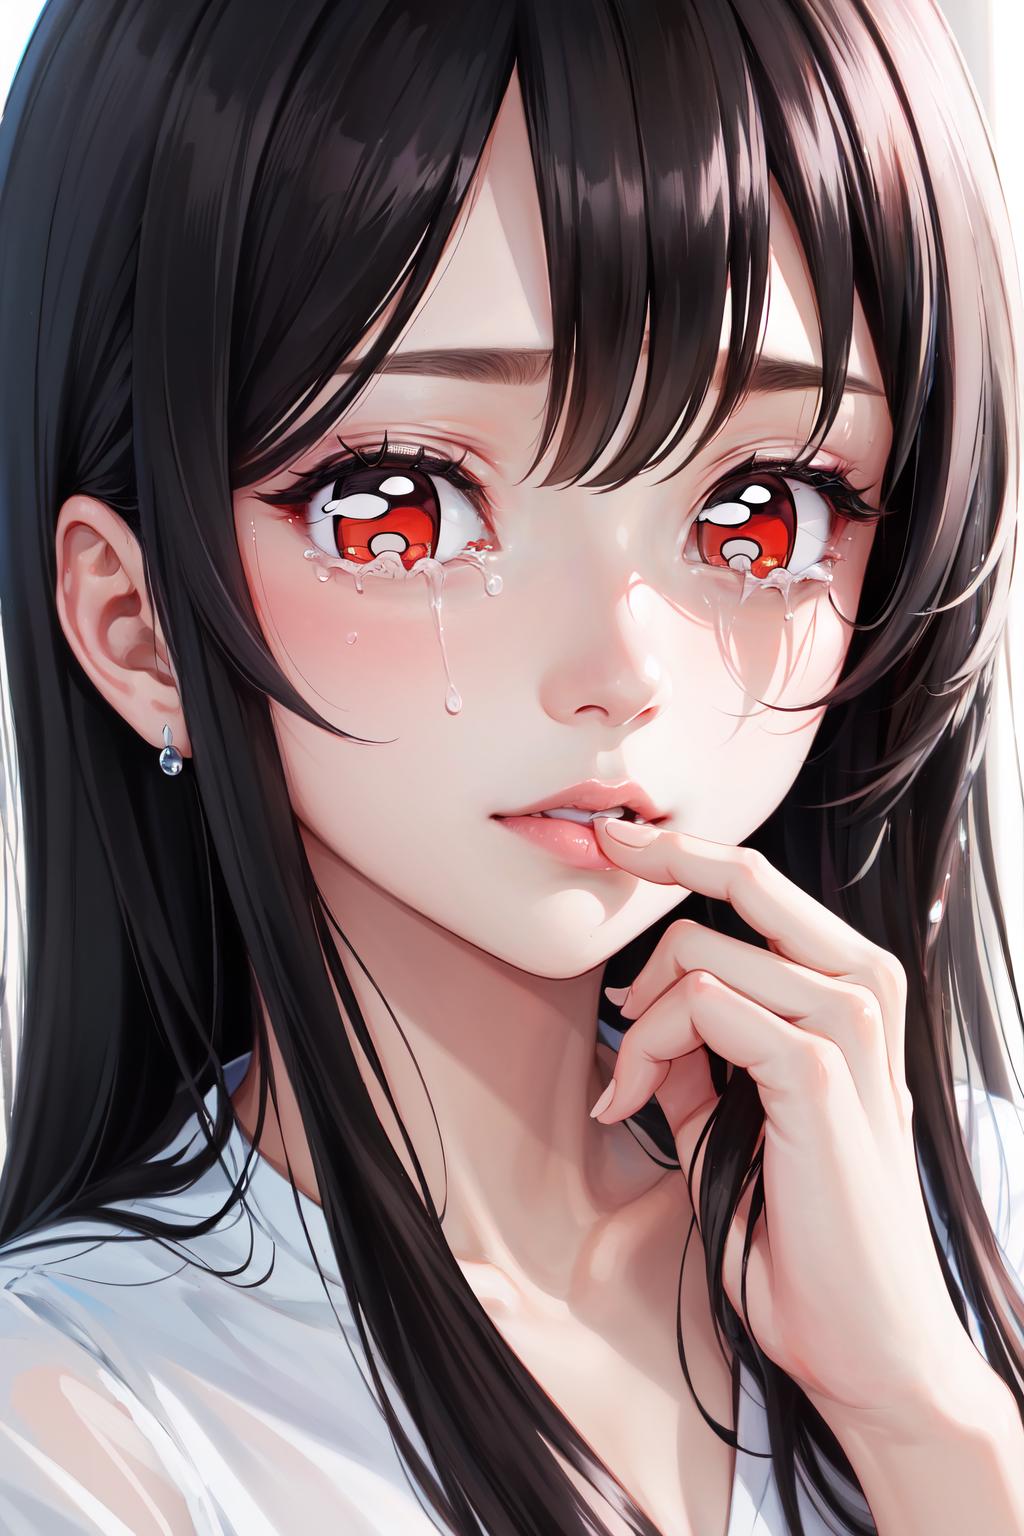 sad anime eyes is actually amongus with shoes? (gacha club) eye hack 😱👀 -  YouTube